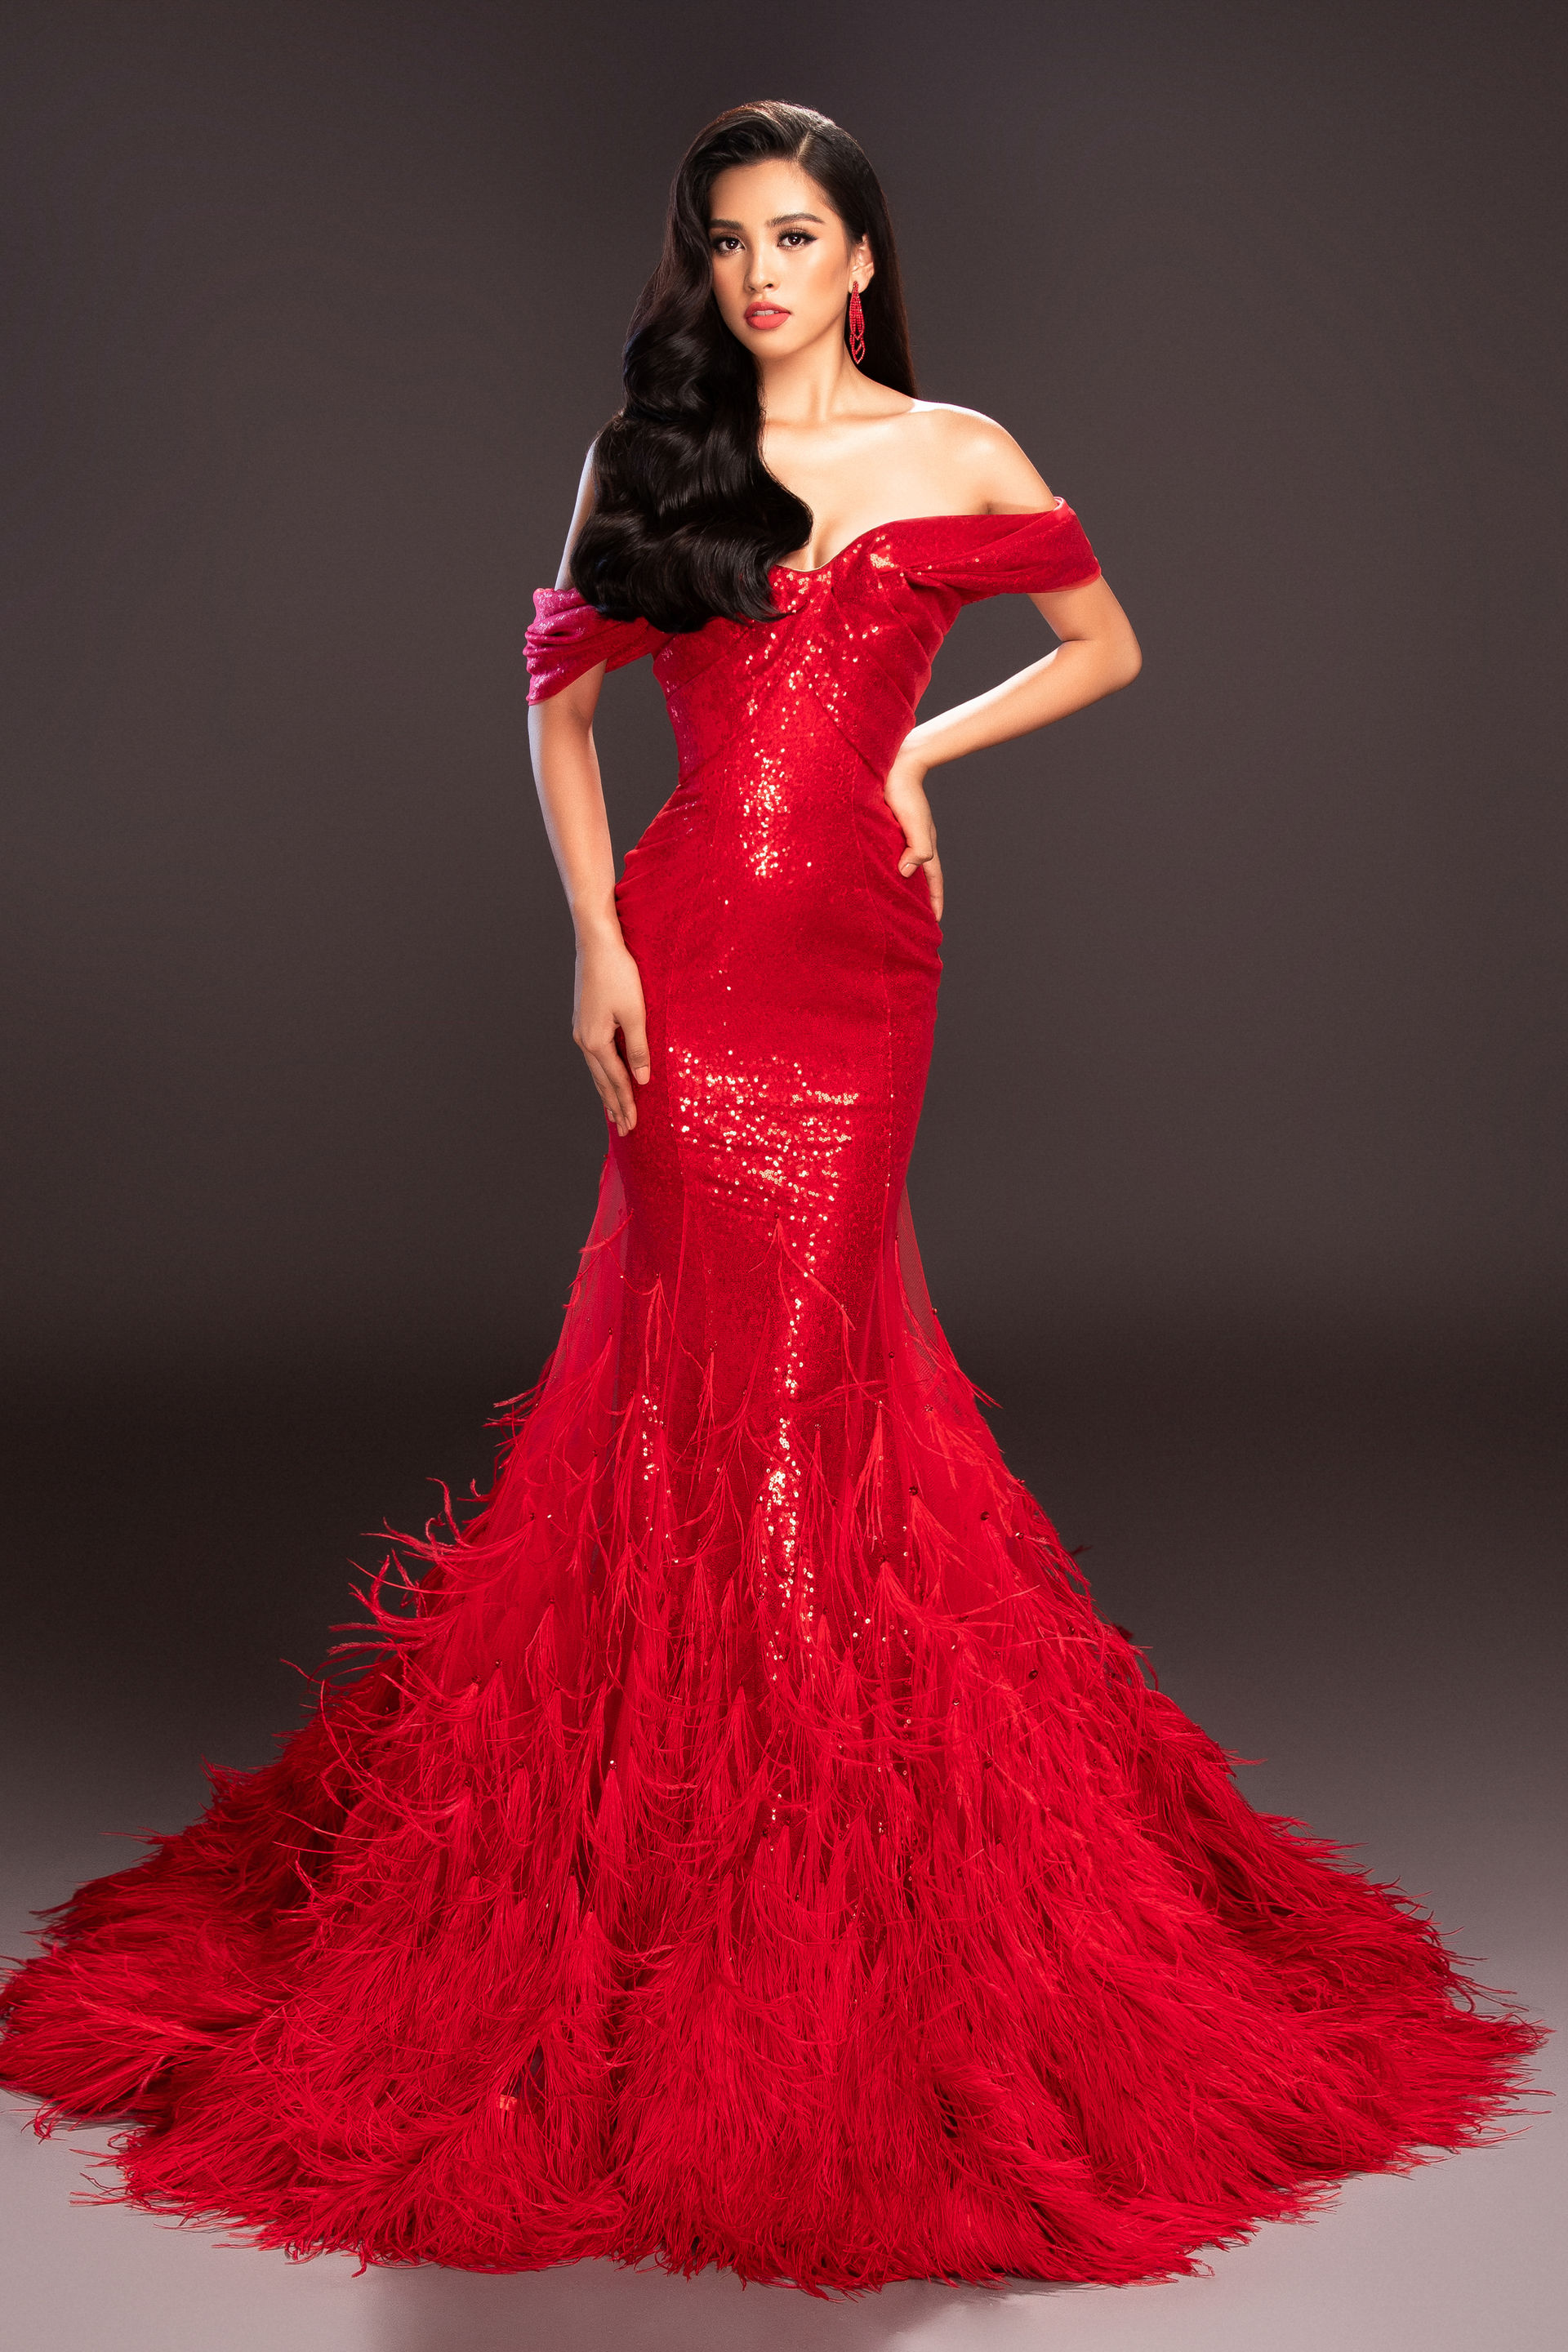  Màu đỏ của chiếc váy đính lông vũ phù hợp làn da của hoa hậu 18 tuổi.